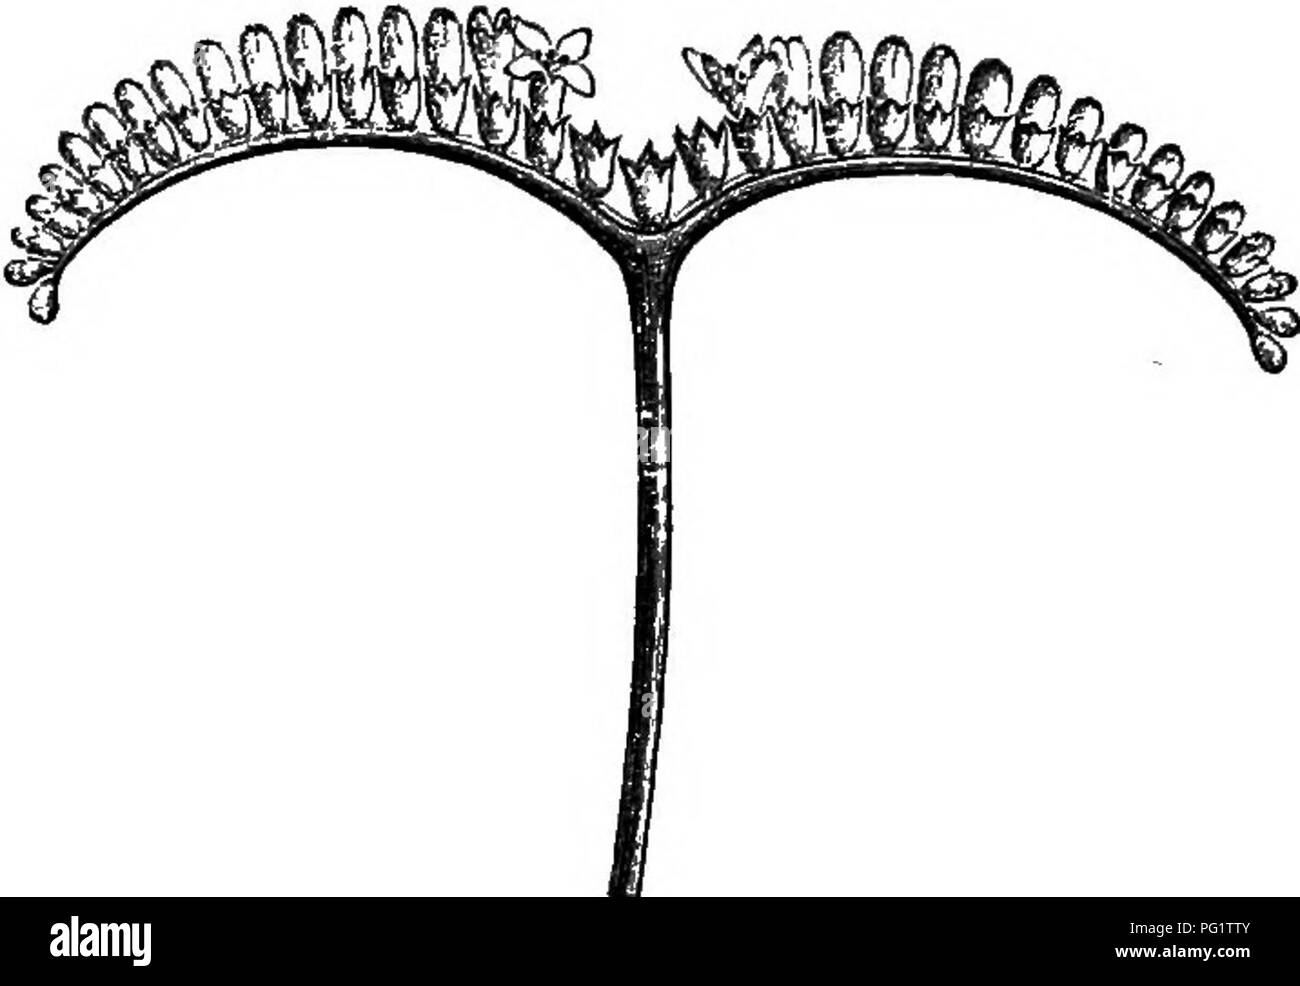 . La storia naturale delle piante. La botanica. RUBIACE^. 301 ovatiflora, un piccolo albero australiano, ha polygamo-dicecious fiori che approccio molto quasi a quelle della ridotta tipi di Ouettarda. La corolla è valvate o leggermente embricato. In Guettarda eiiipUca. fiore maschile, l'ovaio sterile è sormontato da un semplice subulate papillose e stile. L'ovario diventa un elon- drupa di gate con un 2-4-celled putamen. Si può considerare questa pianta come formare solo una sezione del genere Guettarda; le sue infiorescenze assomigliano umbels talvolta sovrapposte. Canthium (fig.- 290-293), a cui abbiamo allegato come Foto Stock